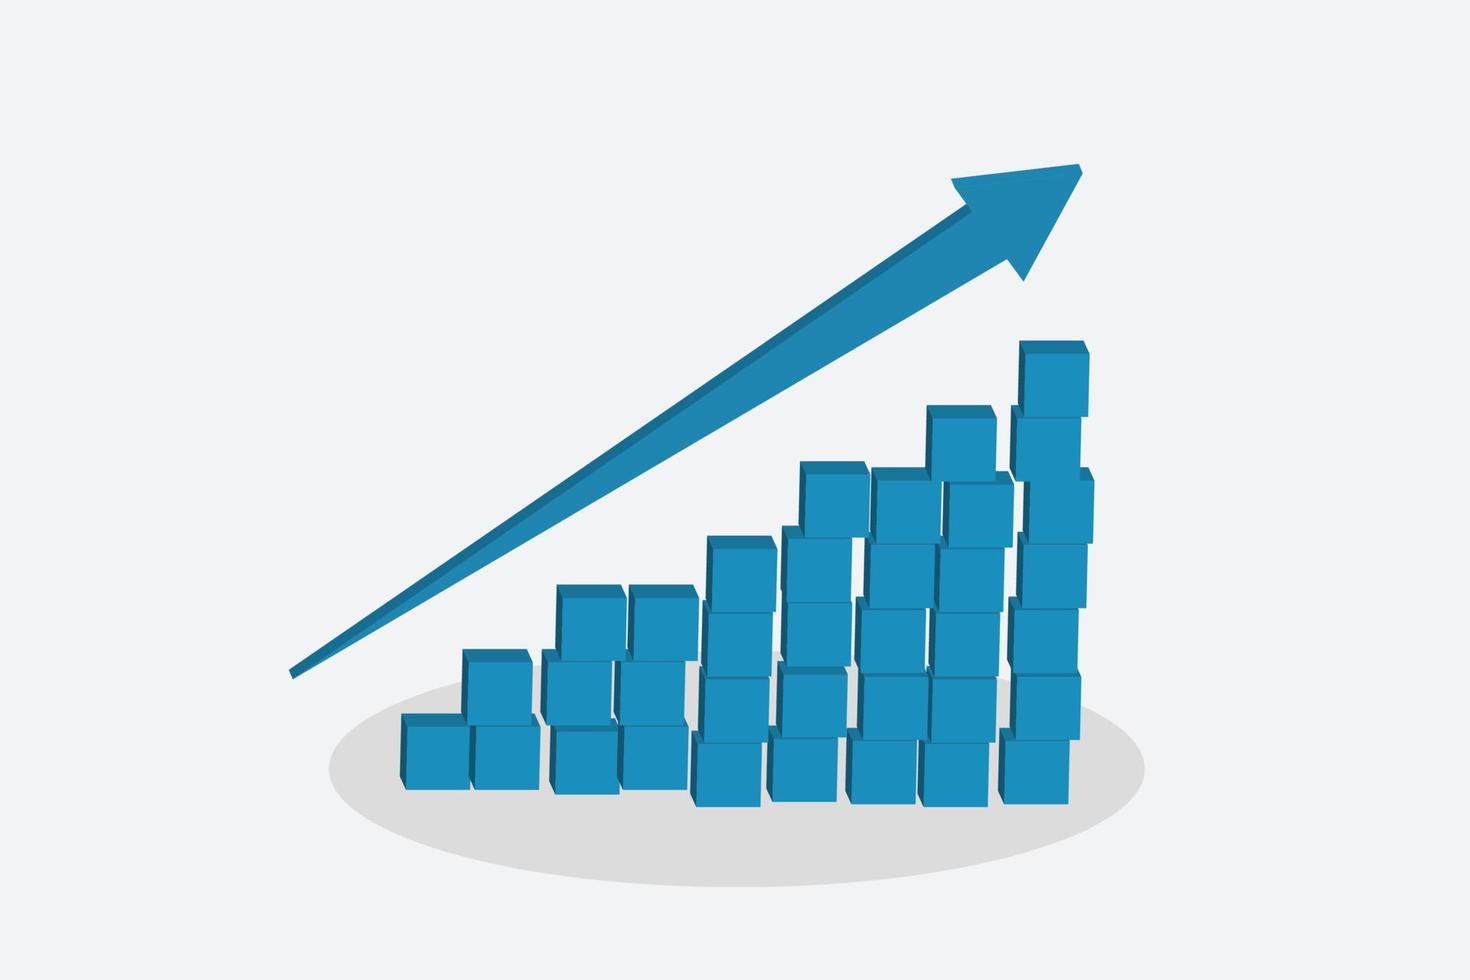 diagrama de flecha de crecimiento economía estadística progreso empresarial, diseño plano abstracto estilo concepto elemento gráfico vectorial vector